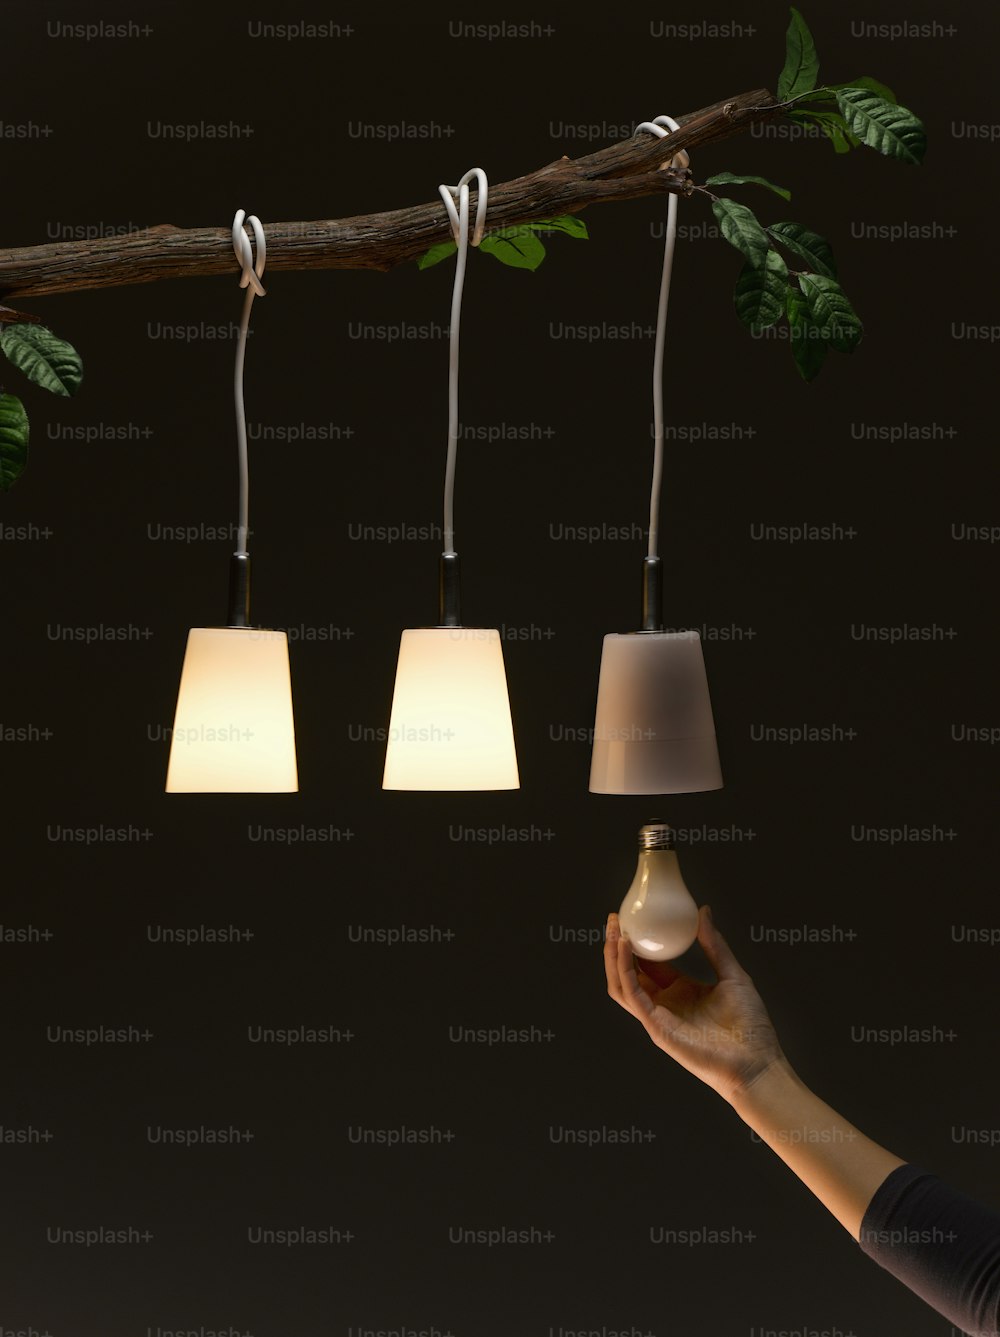 Una persona sostiene una lámpara frente a una rama